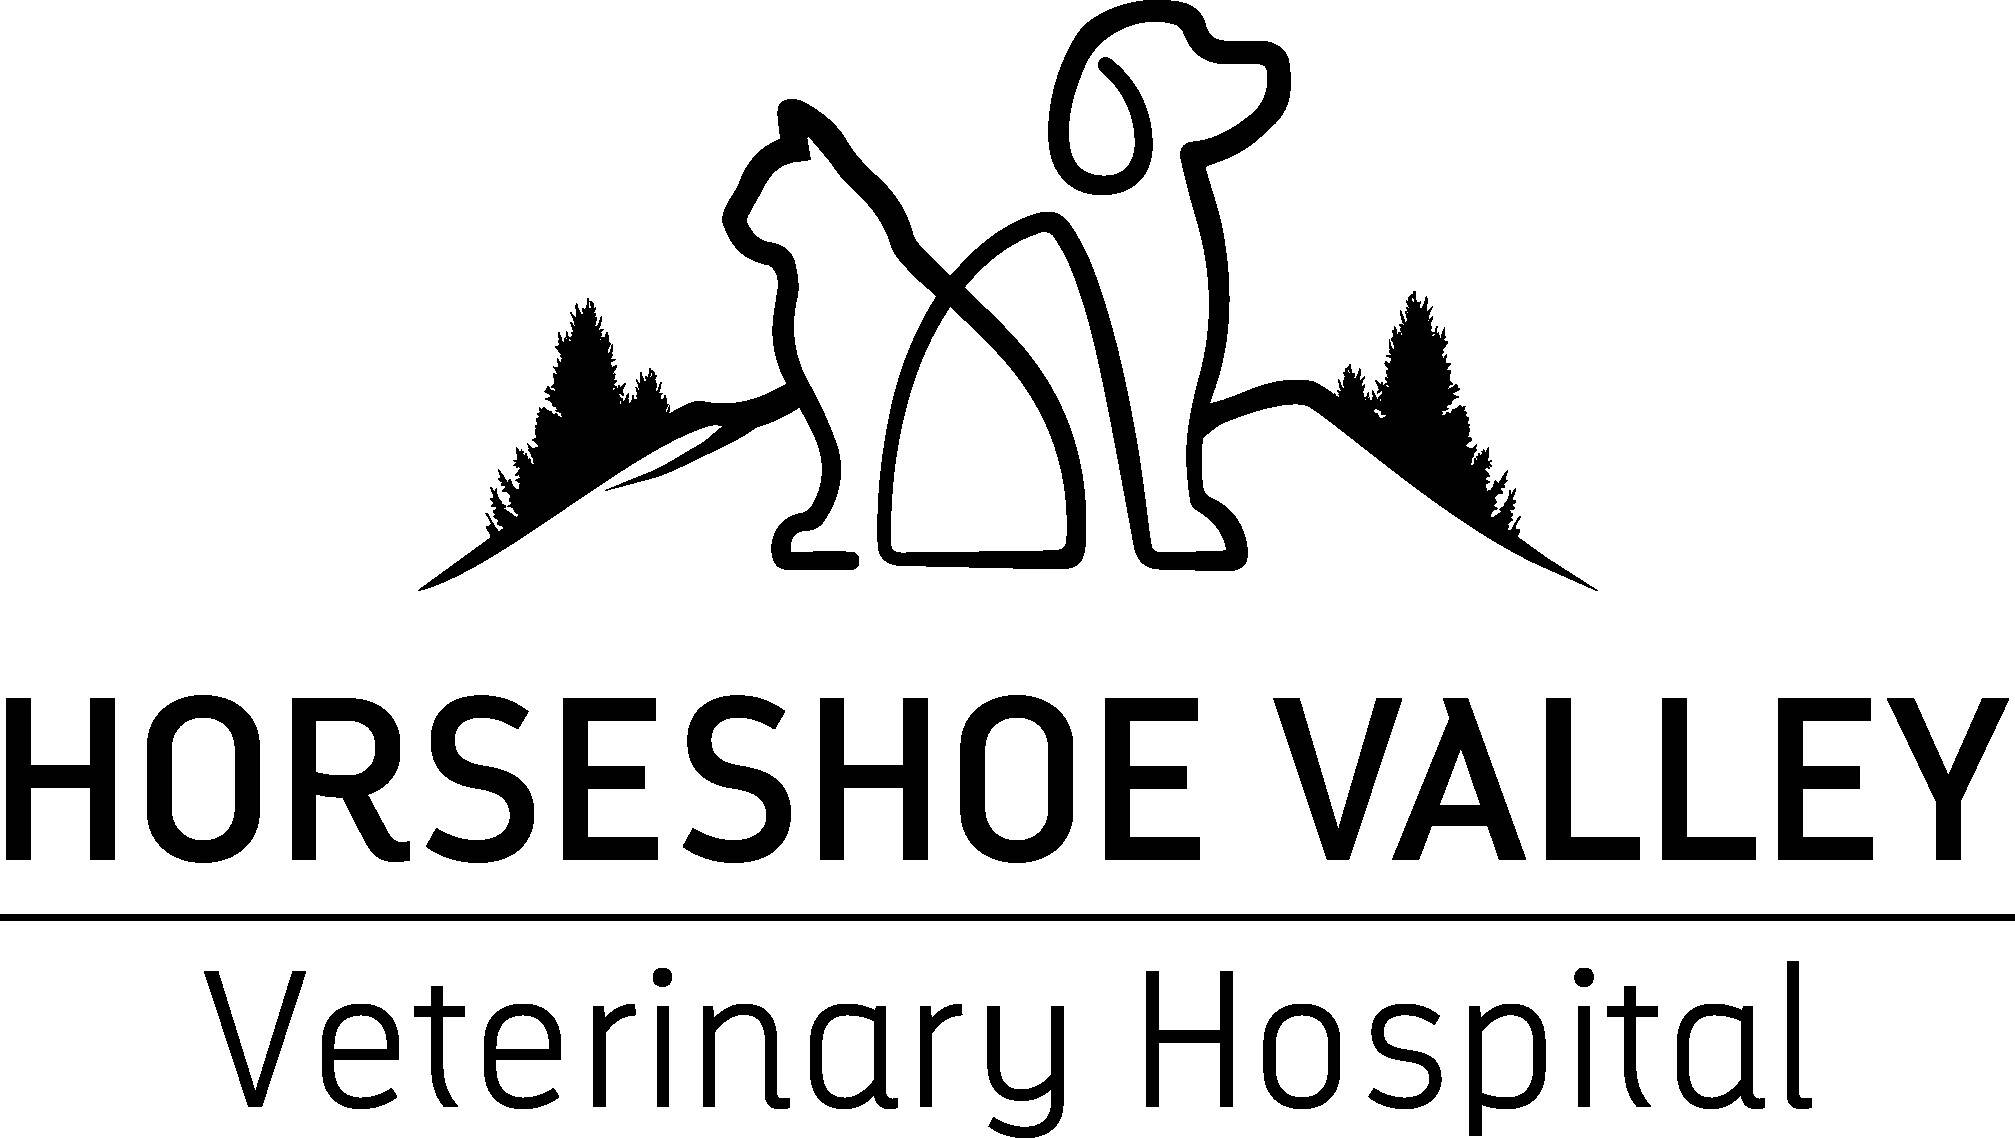 Horseshoe Valley Veterinary Hospital